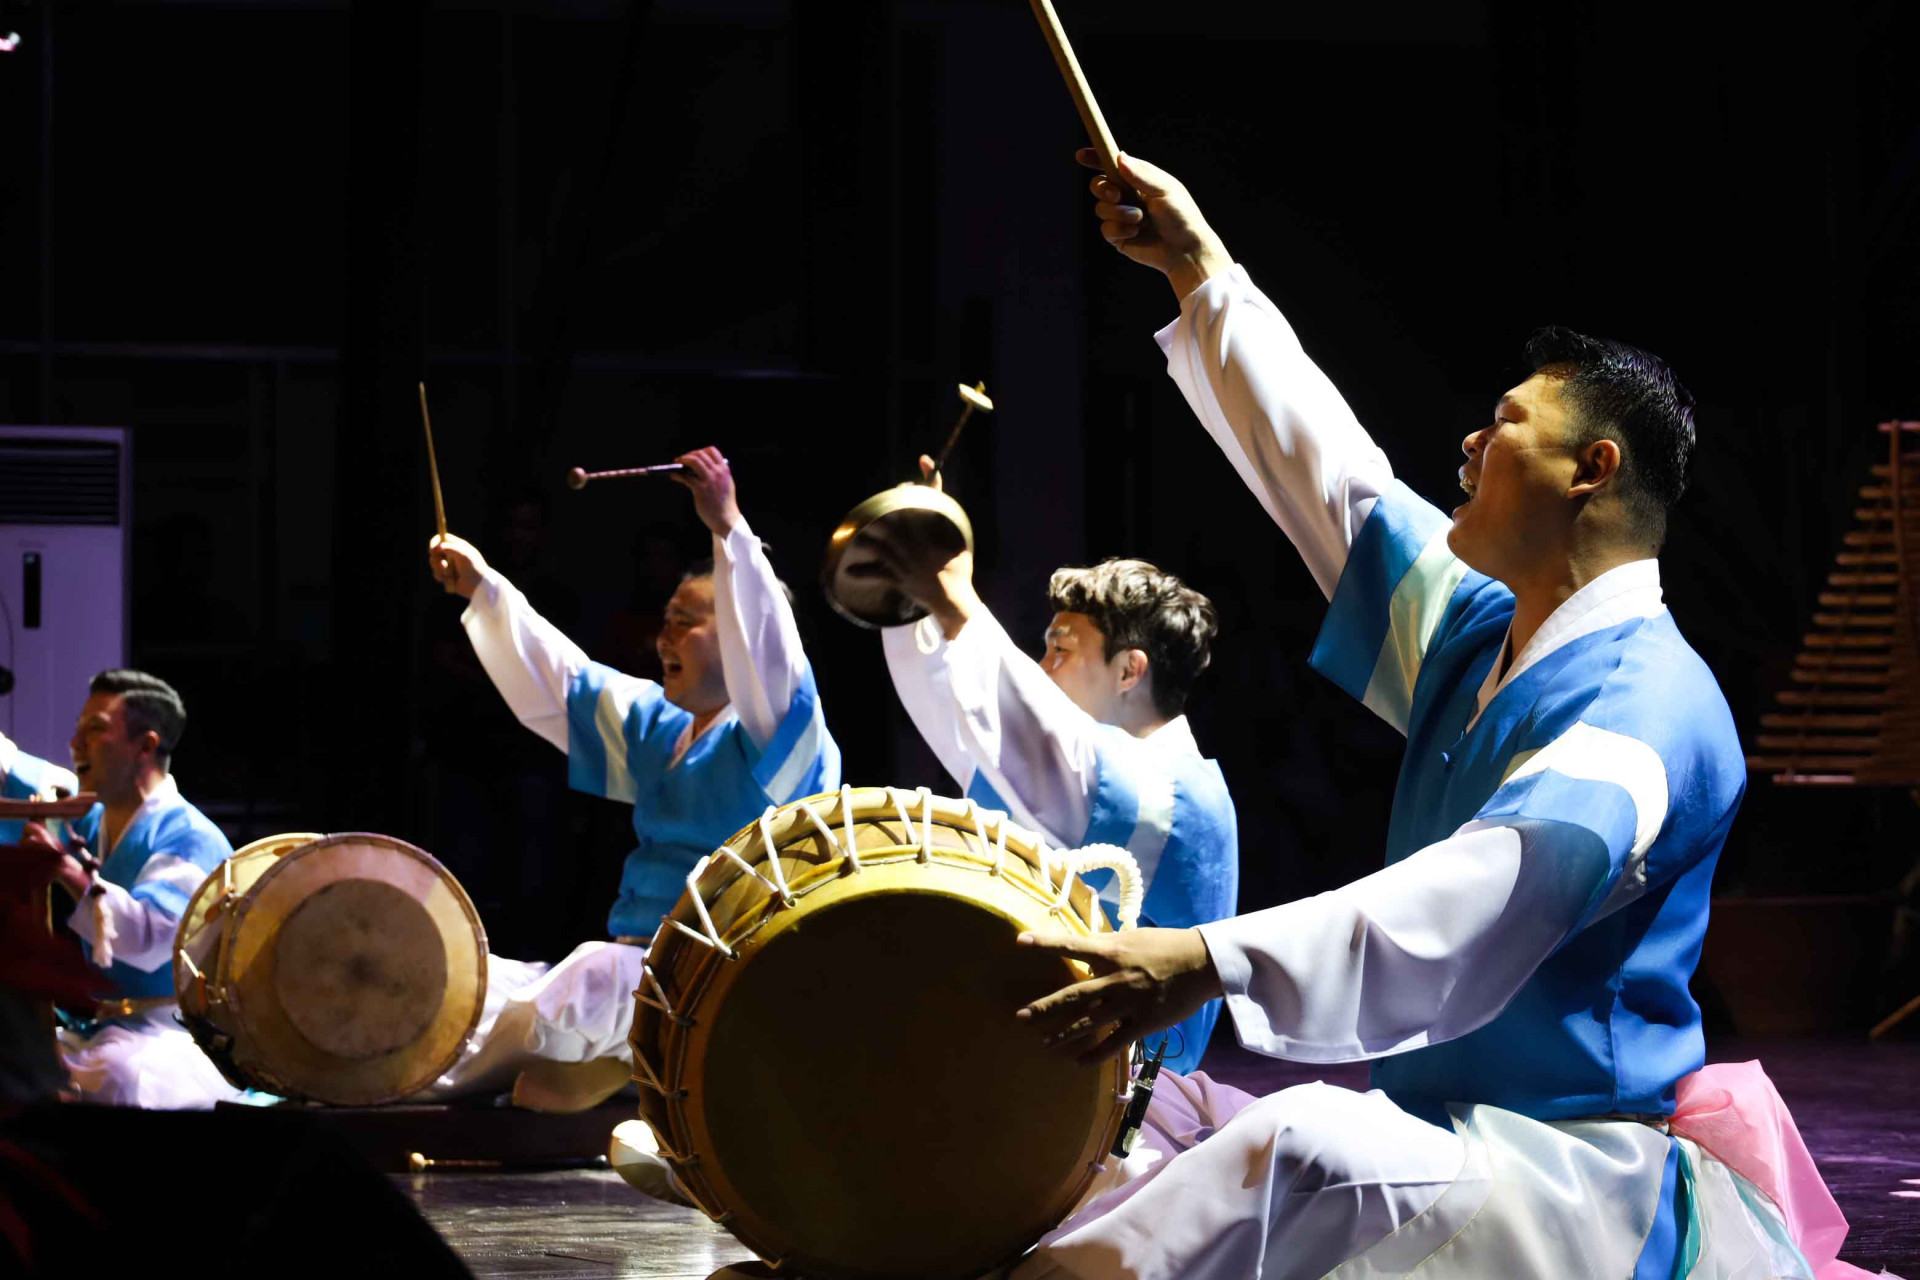 Màn biểu diễn các nhạc cụ bộ gõ truyền thống của đất nước Hàn Quốc mở đầu chương trình thể hiện niềm hy vọng cho sự hòa hợp. 